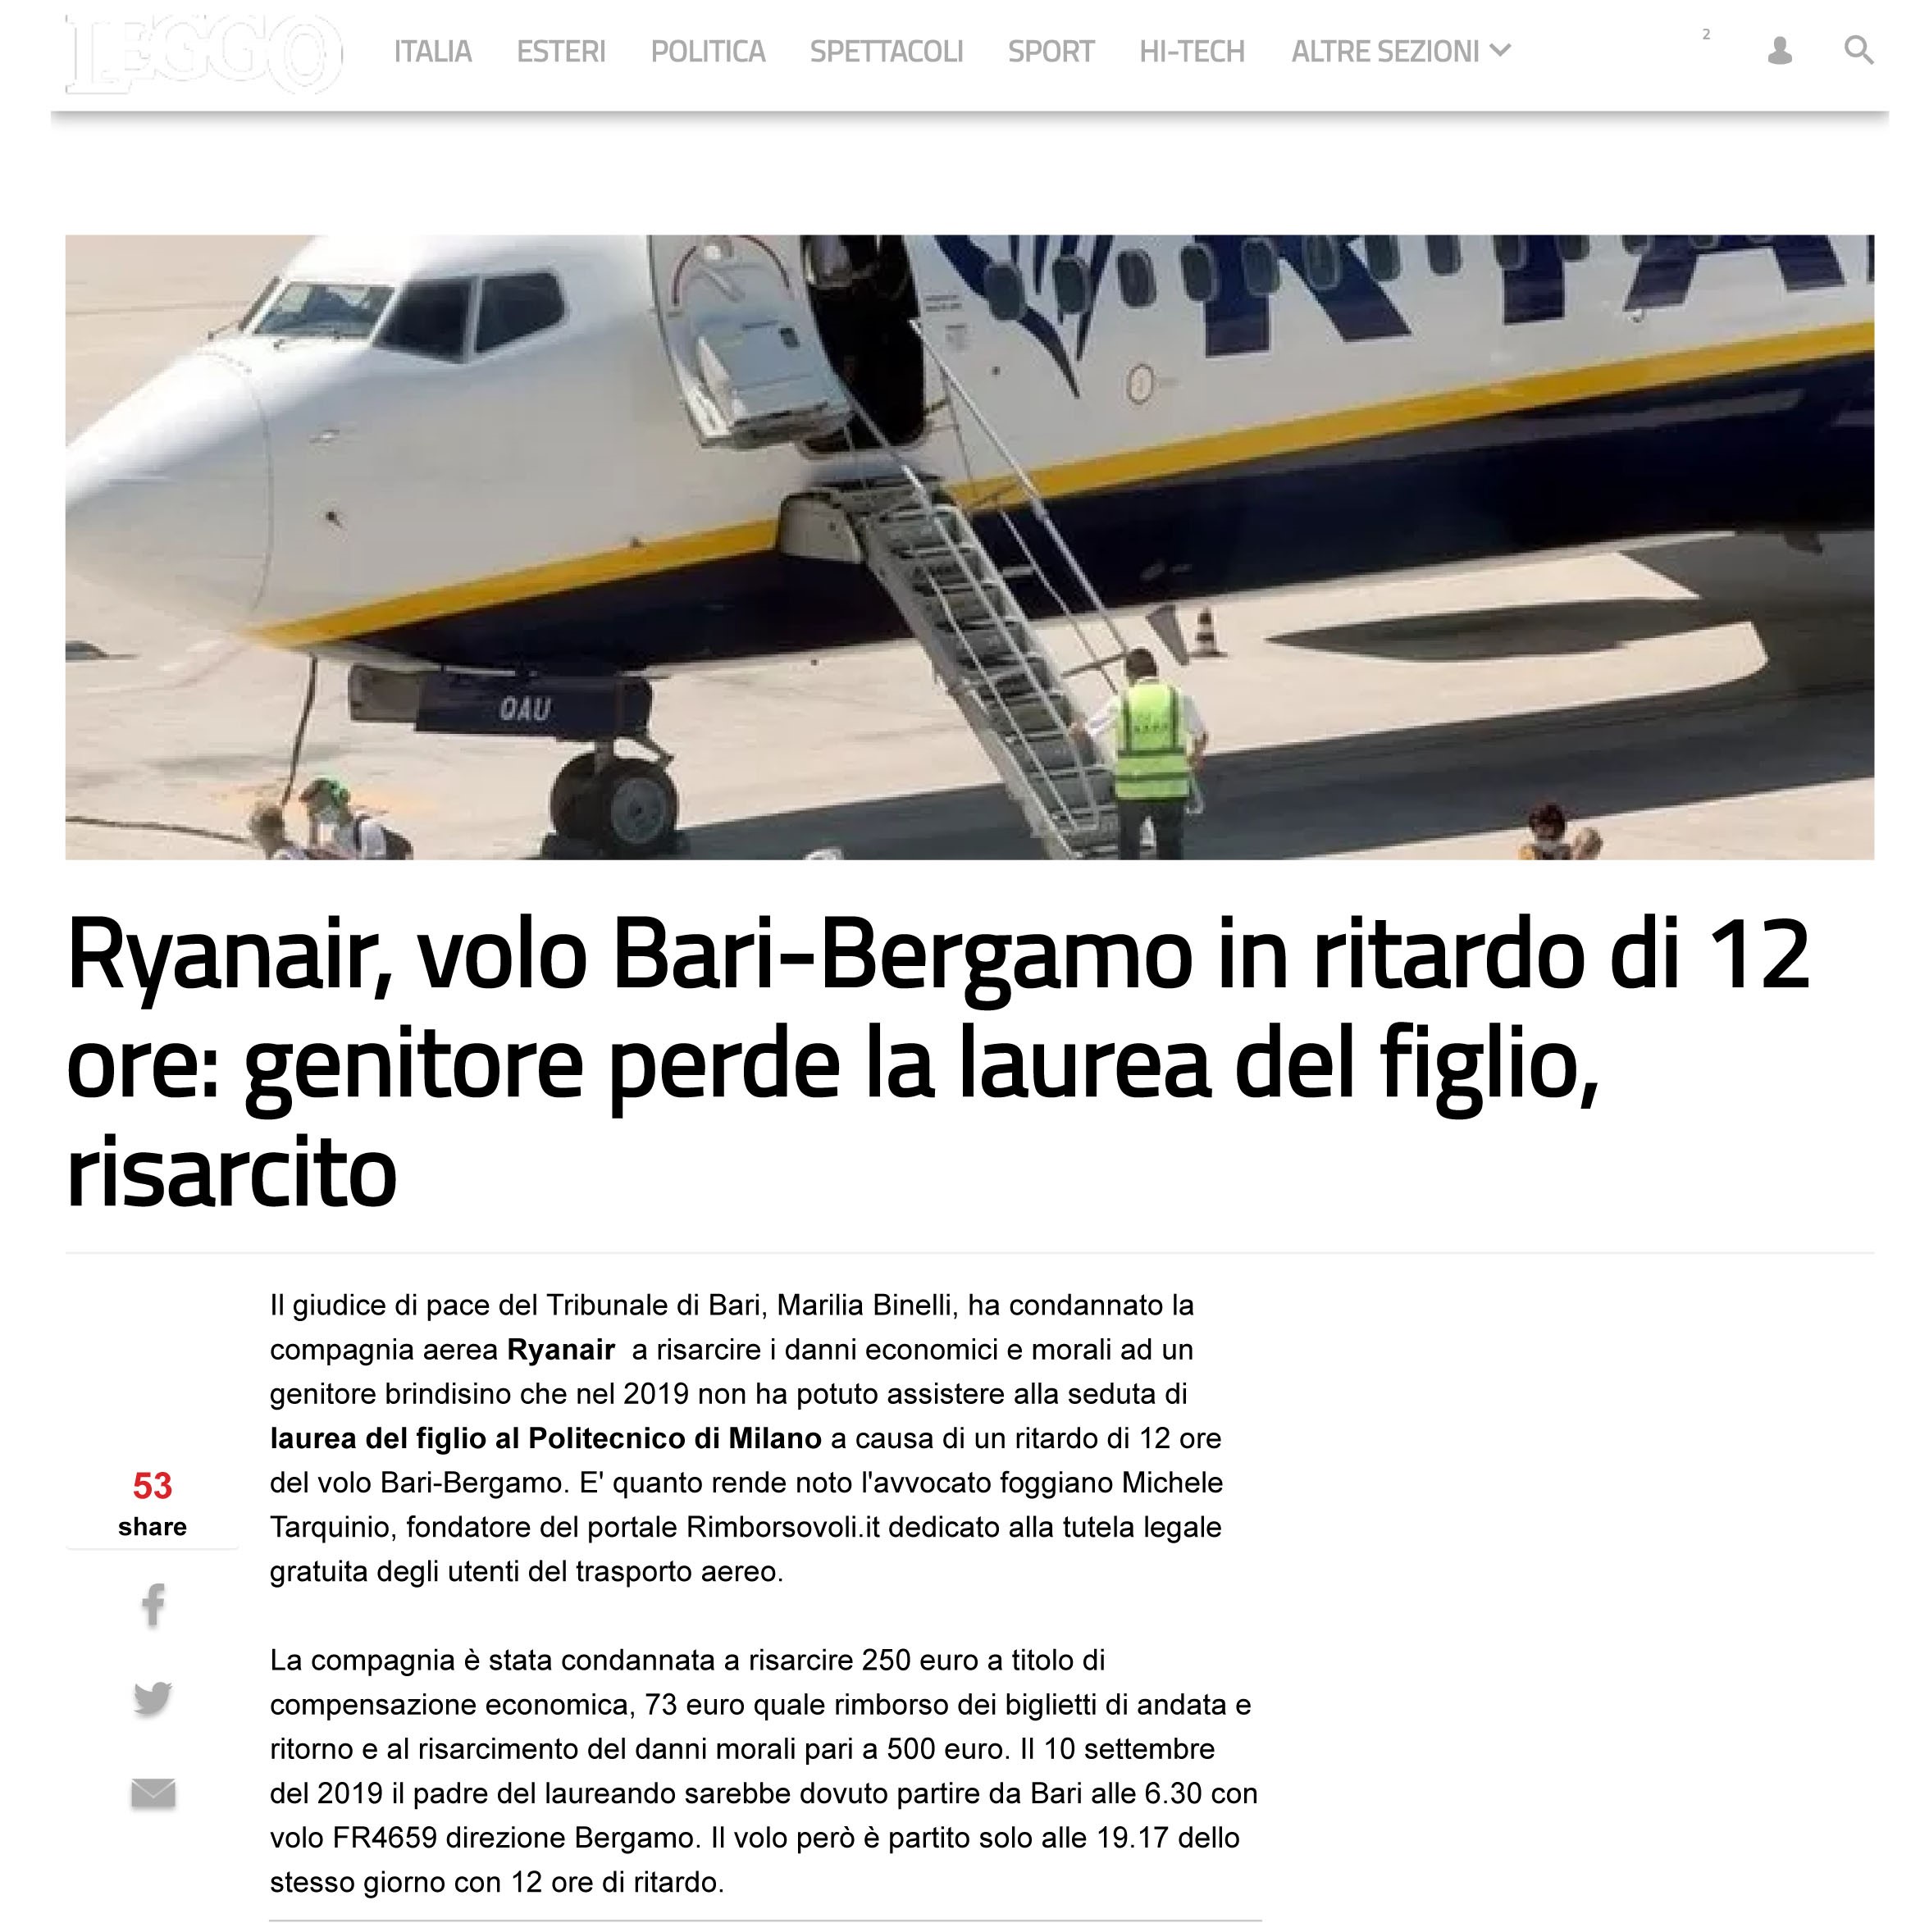 Ryanair, volo Bari-Bergamo in ritardo di 12 ore: genitore perde la laurea del figlio, risarcito